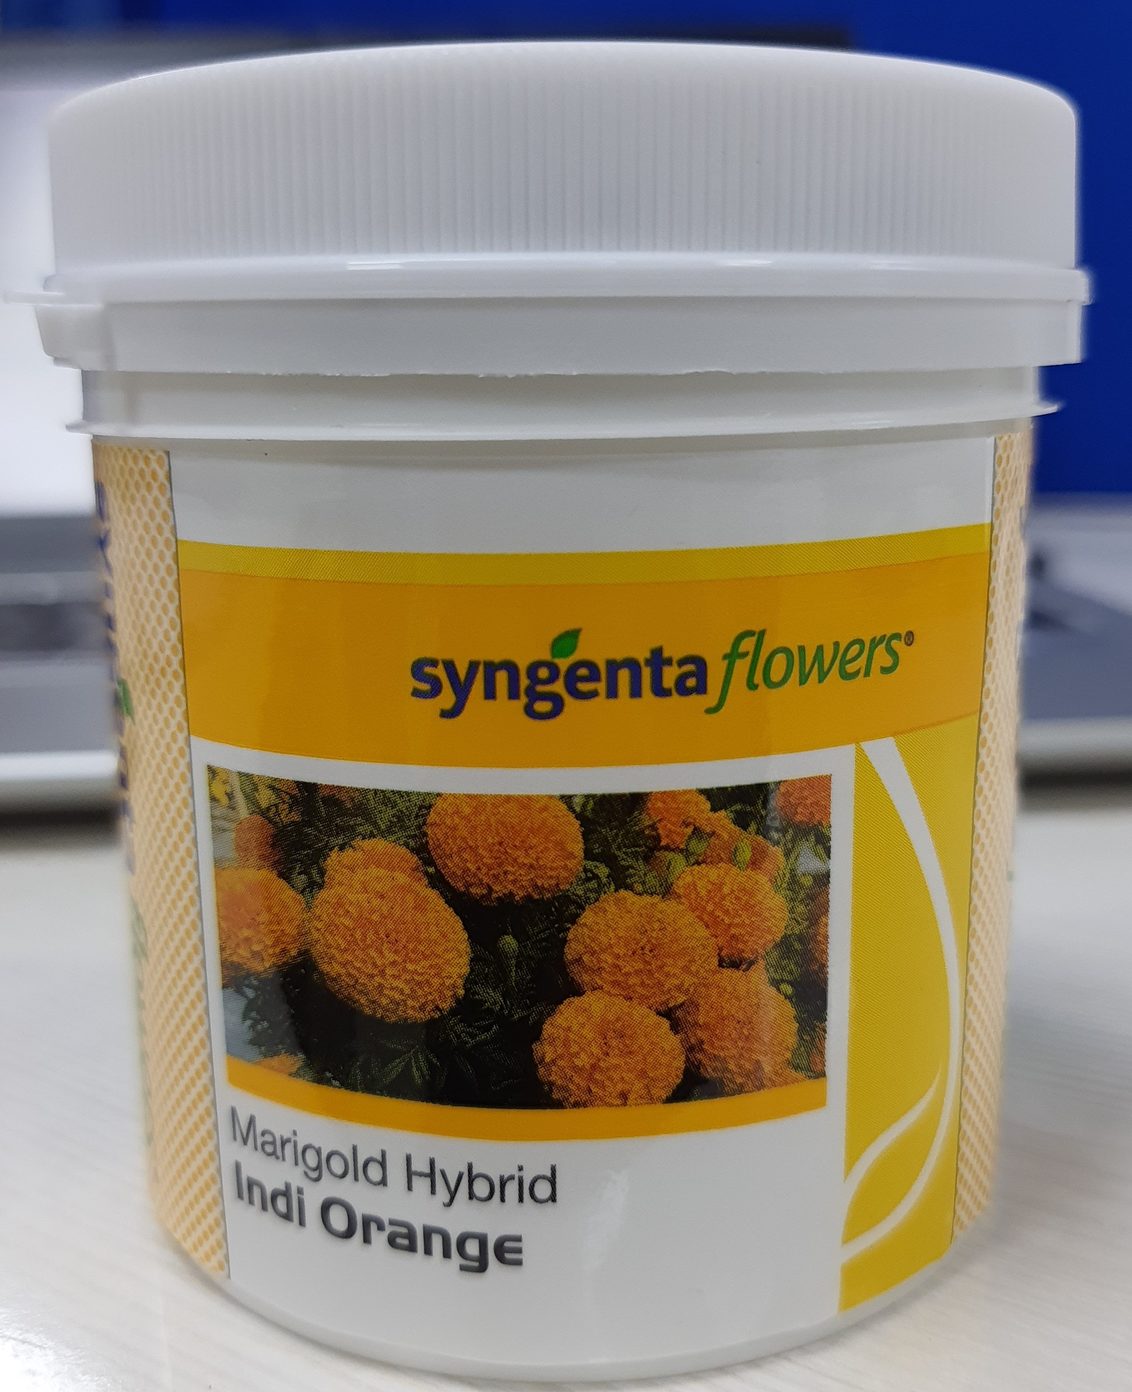 Syngenta Flowers Marigold Indi Orange packaging